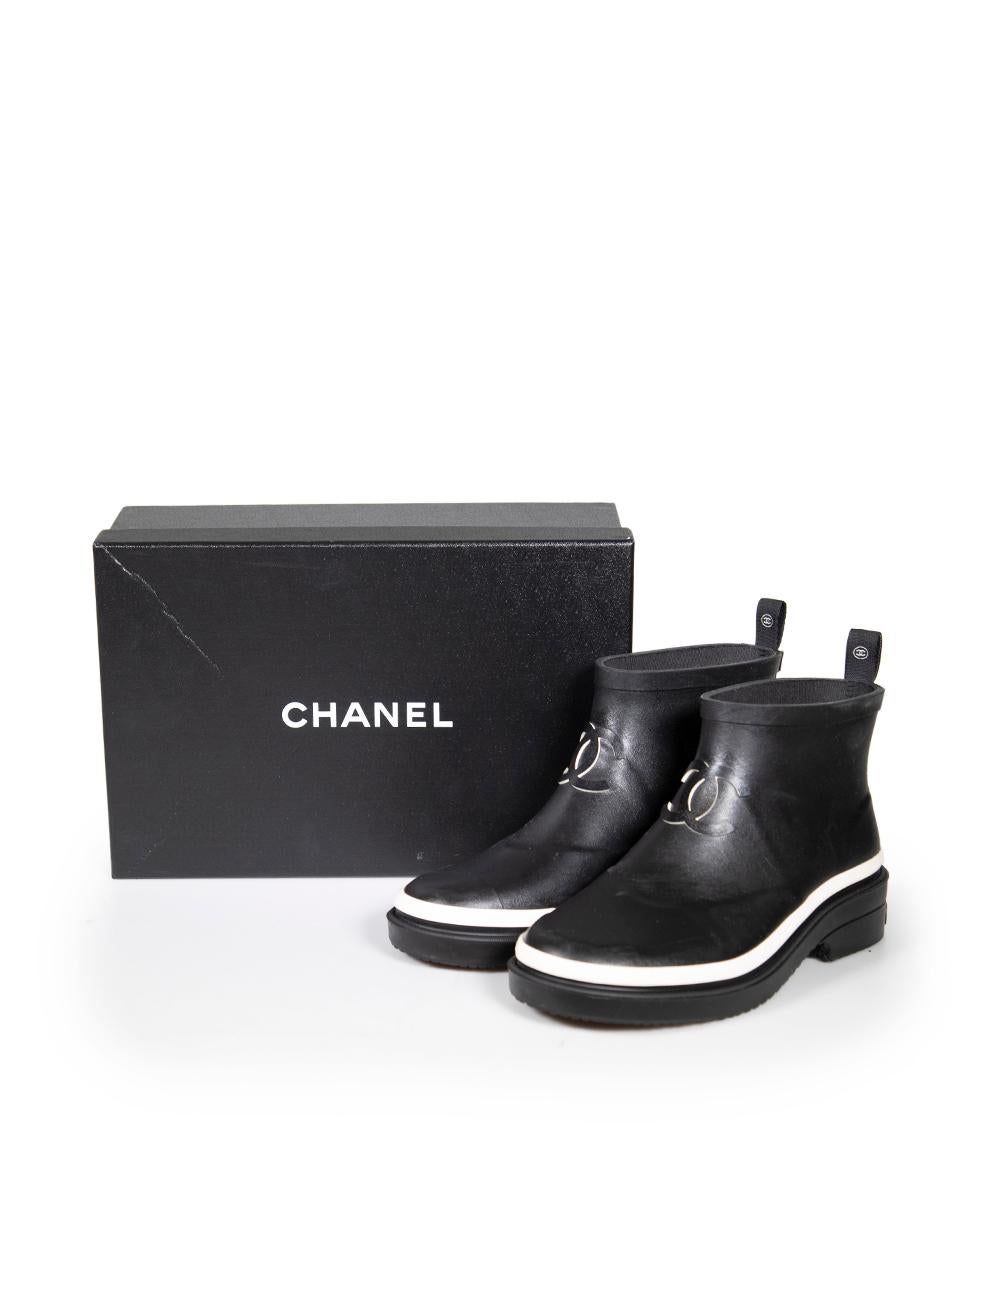 Chanel Black Rubber CC Short Rain Boots Size IT 38 2